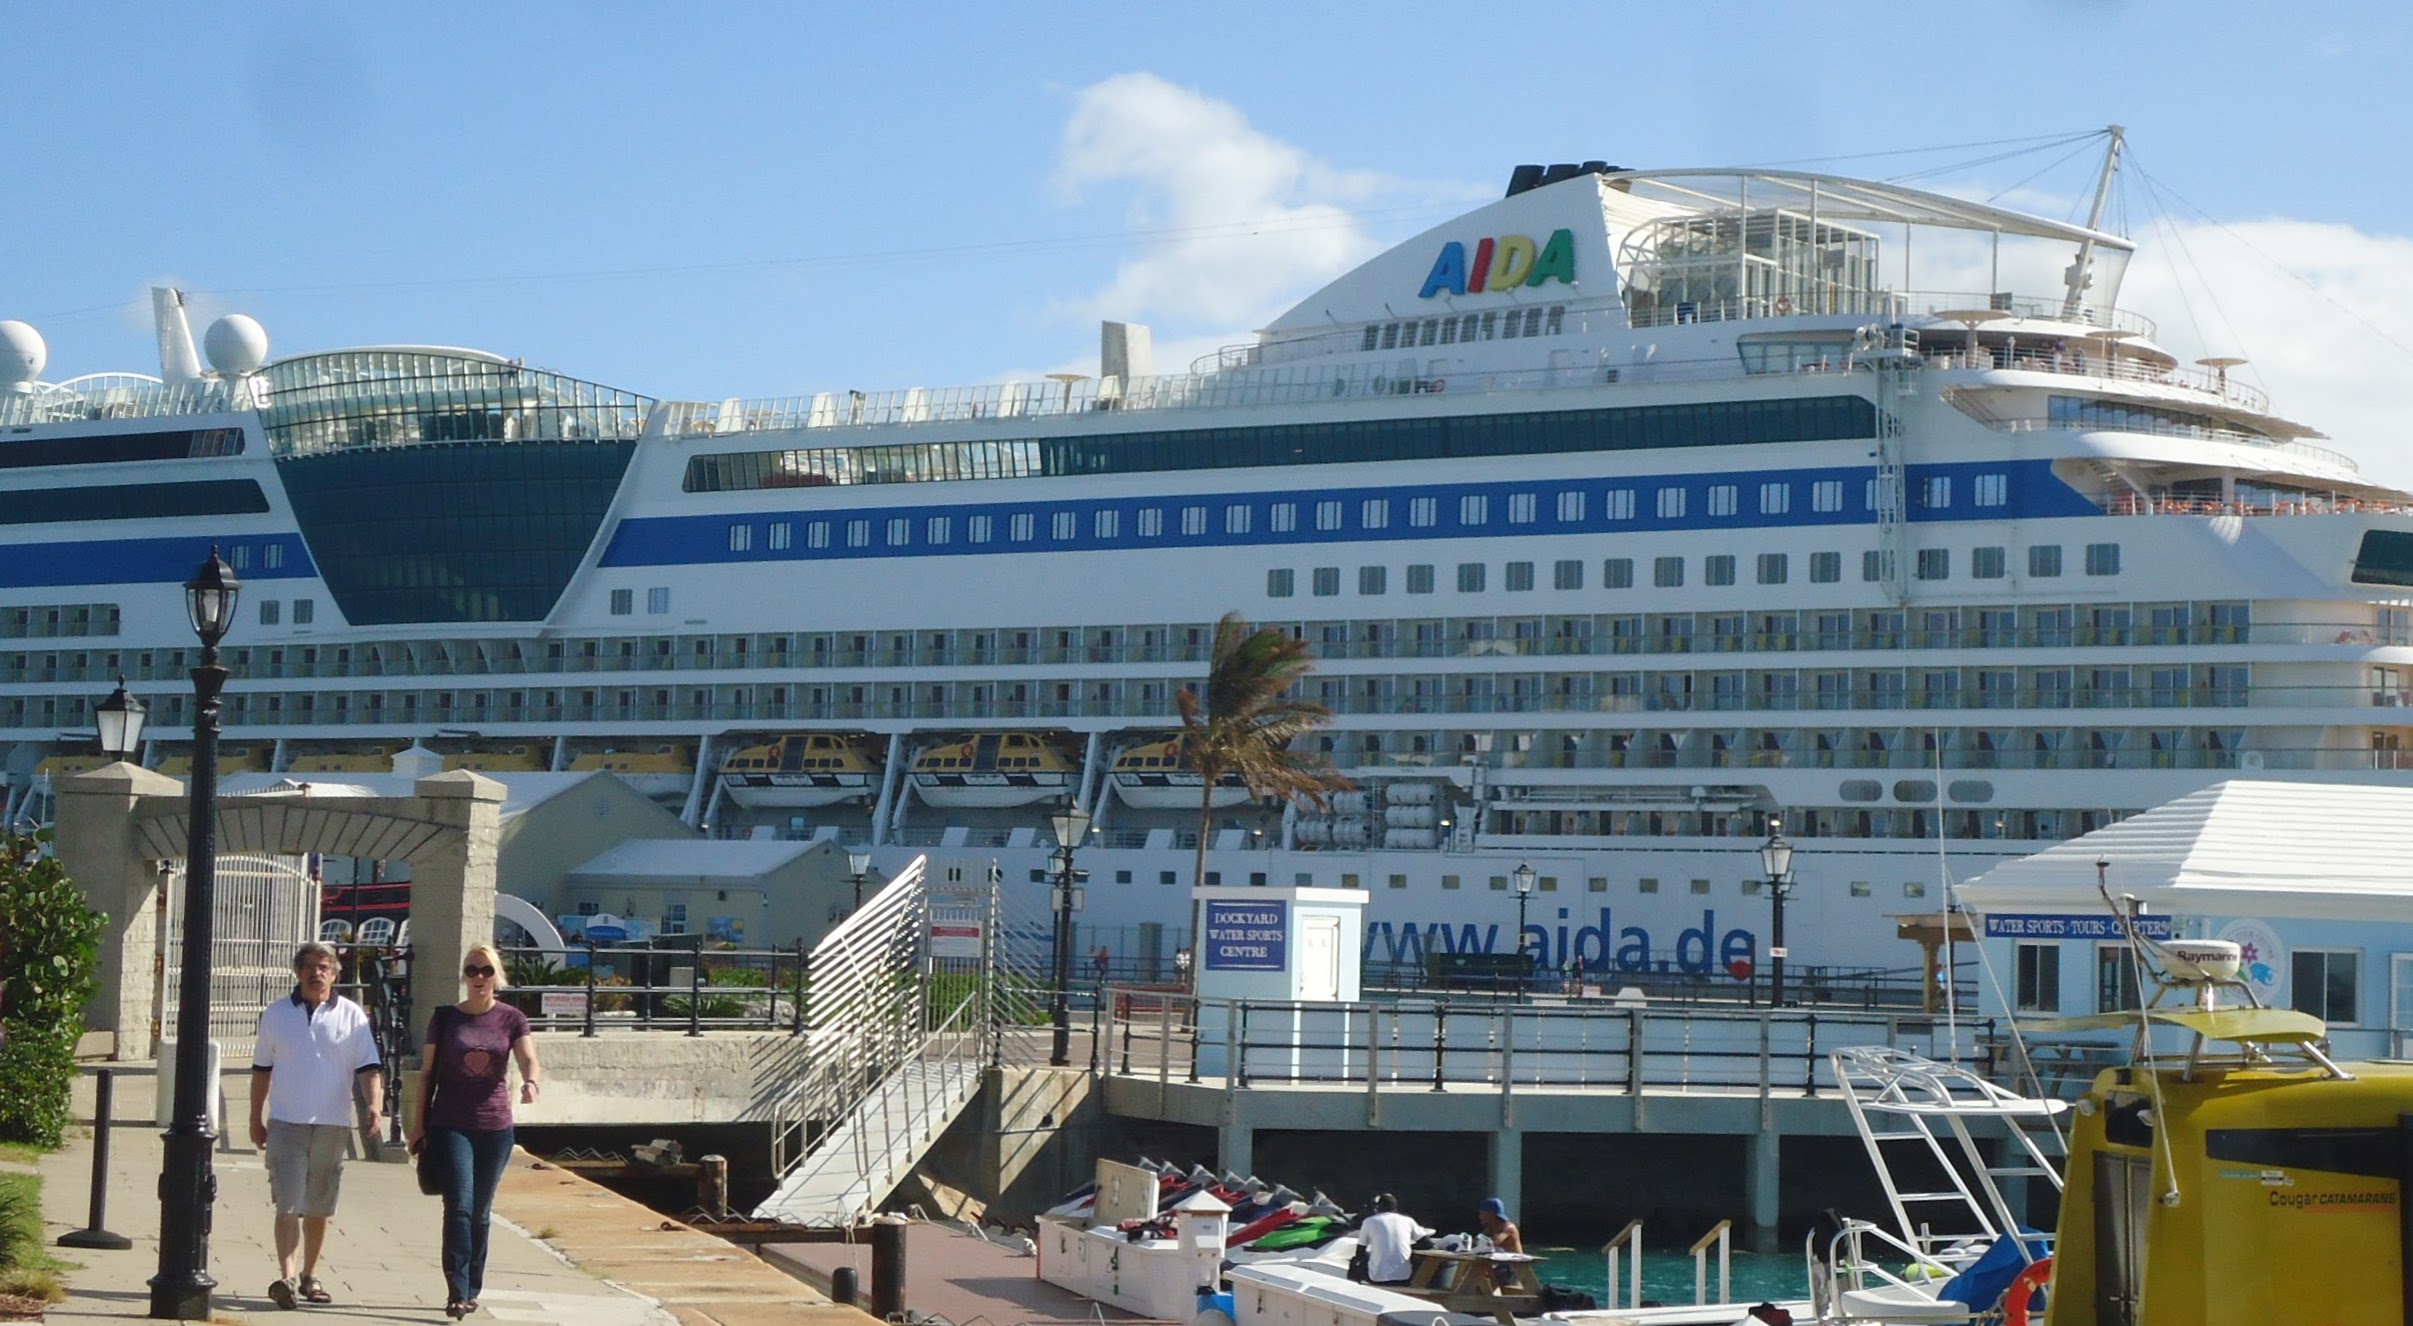 File:Bermuda (UK) image number 415 cruise ship AIDA docked.jpg